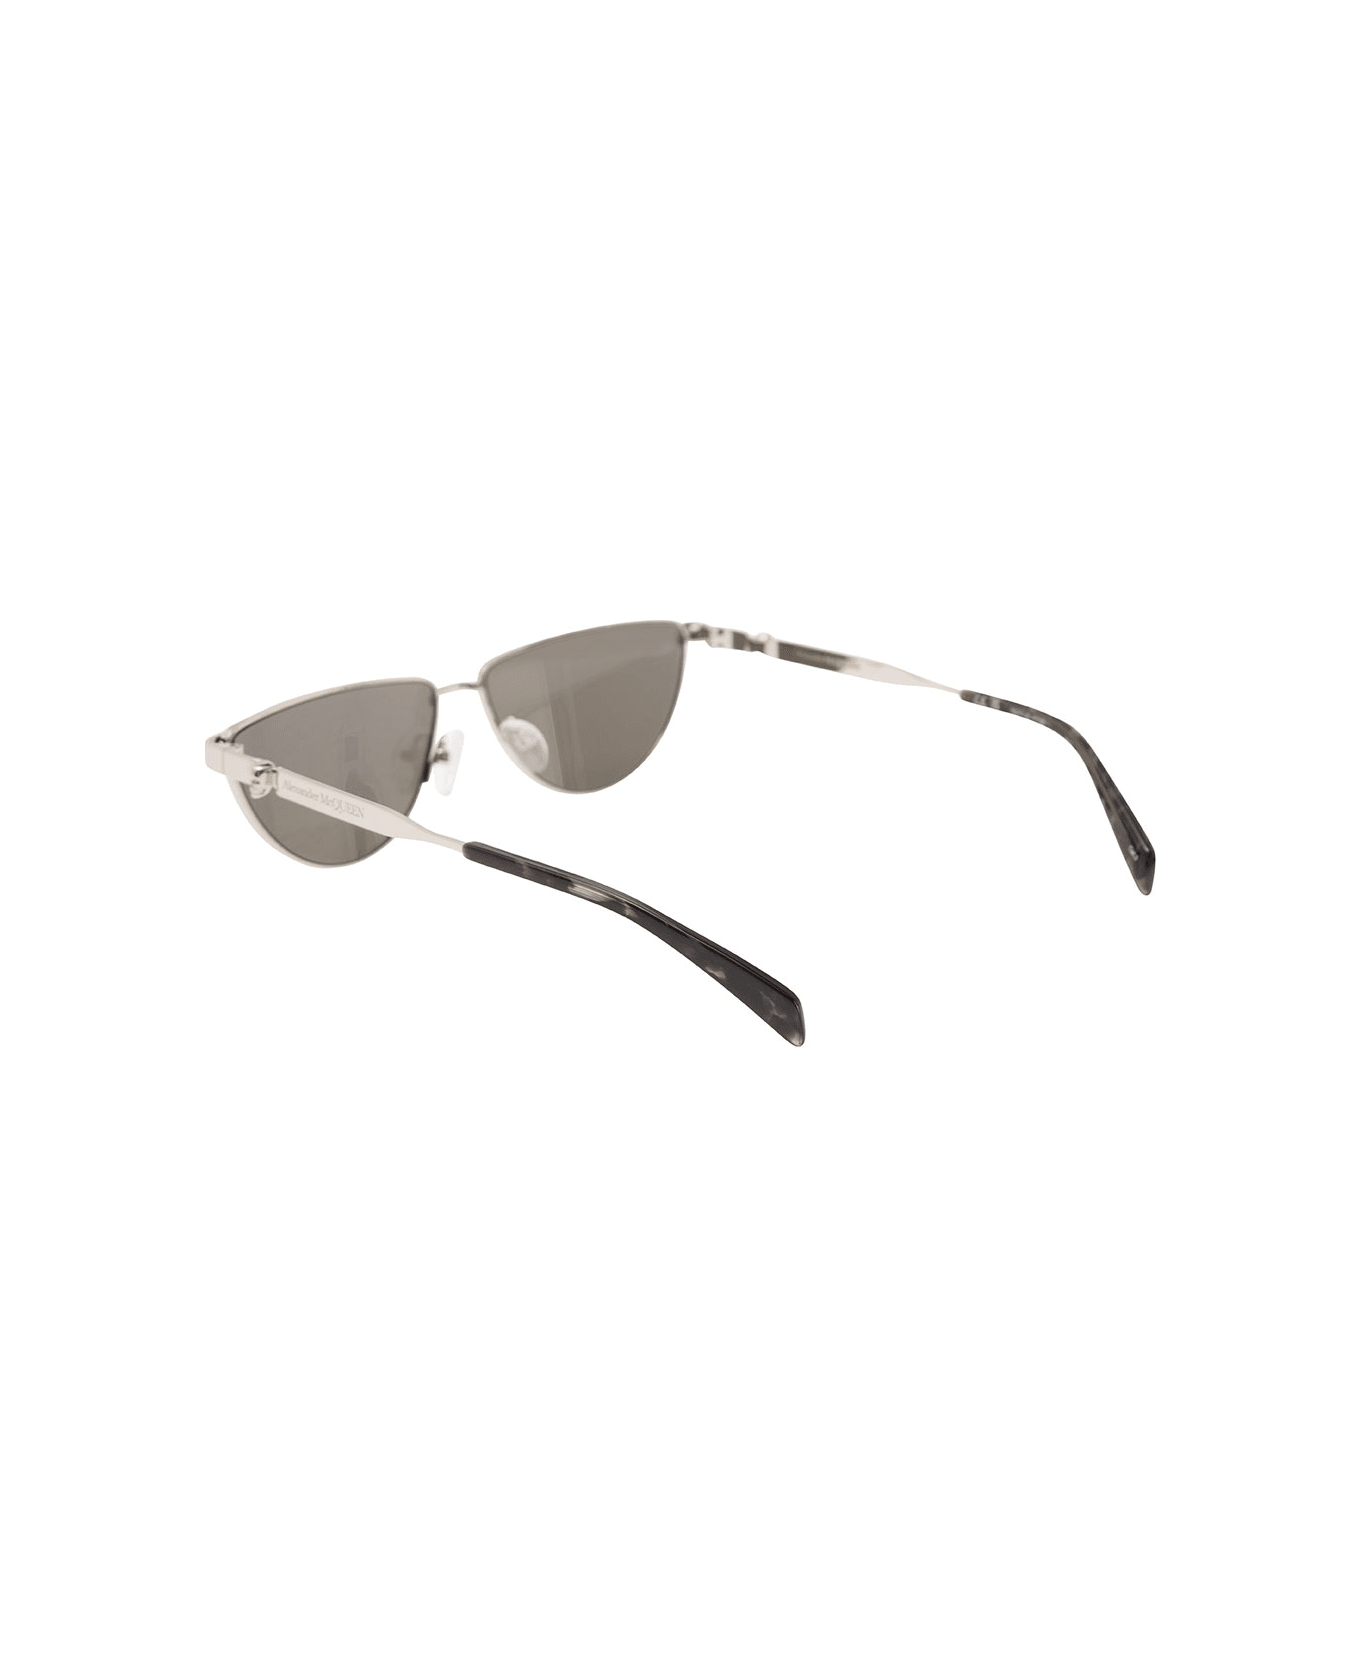 Alexander McQueen Sunglasses With Metal Frame - Metallic